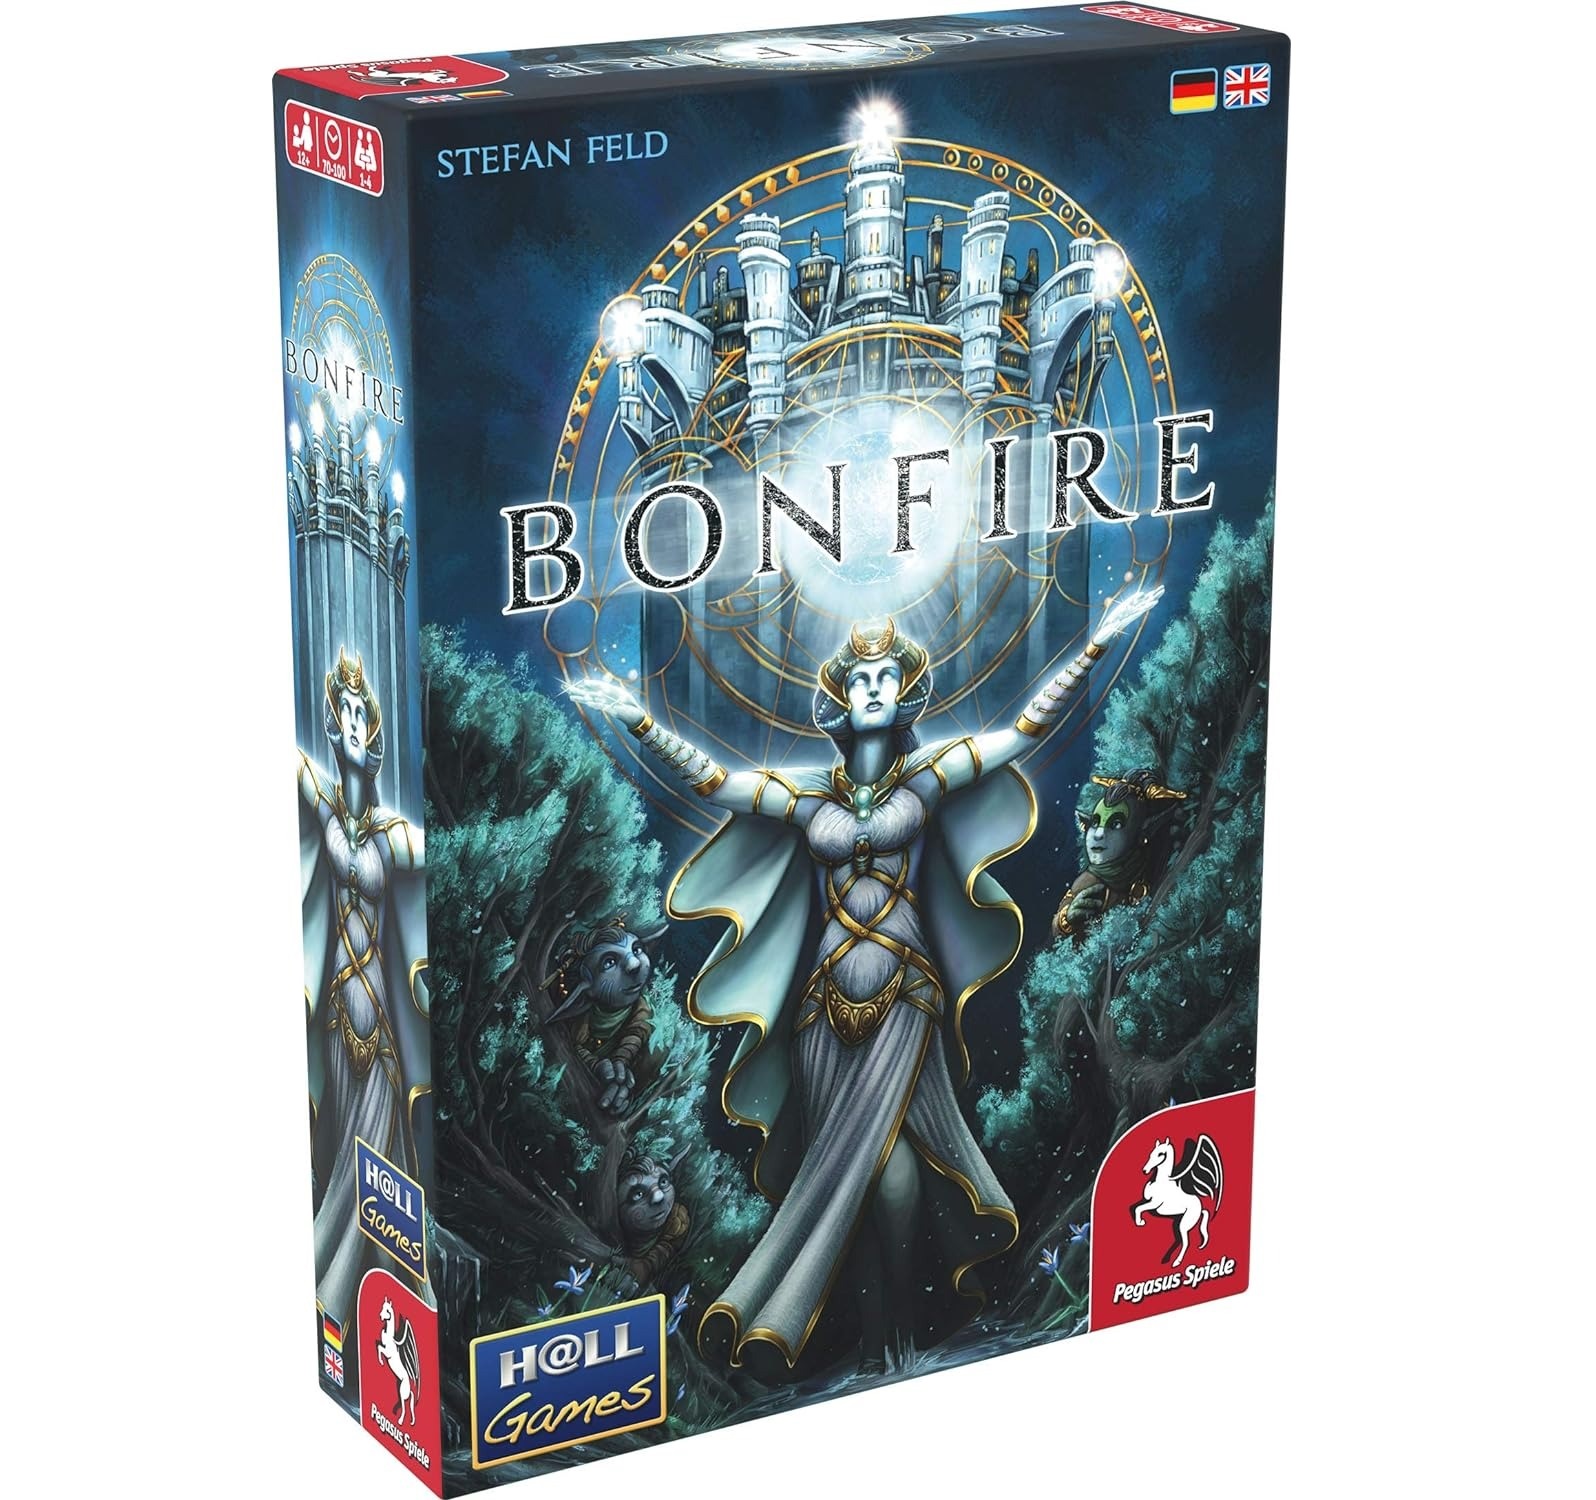  Bonfire